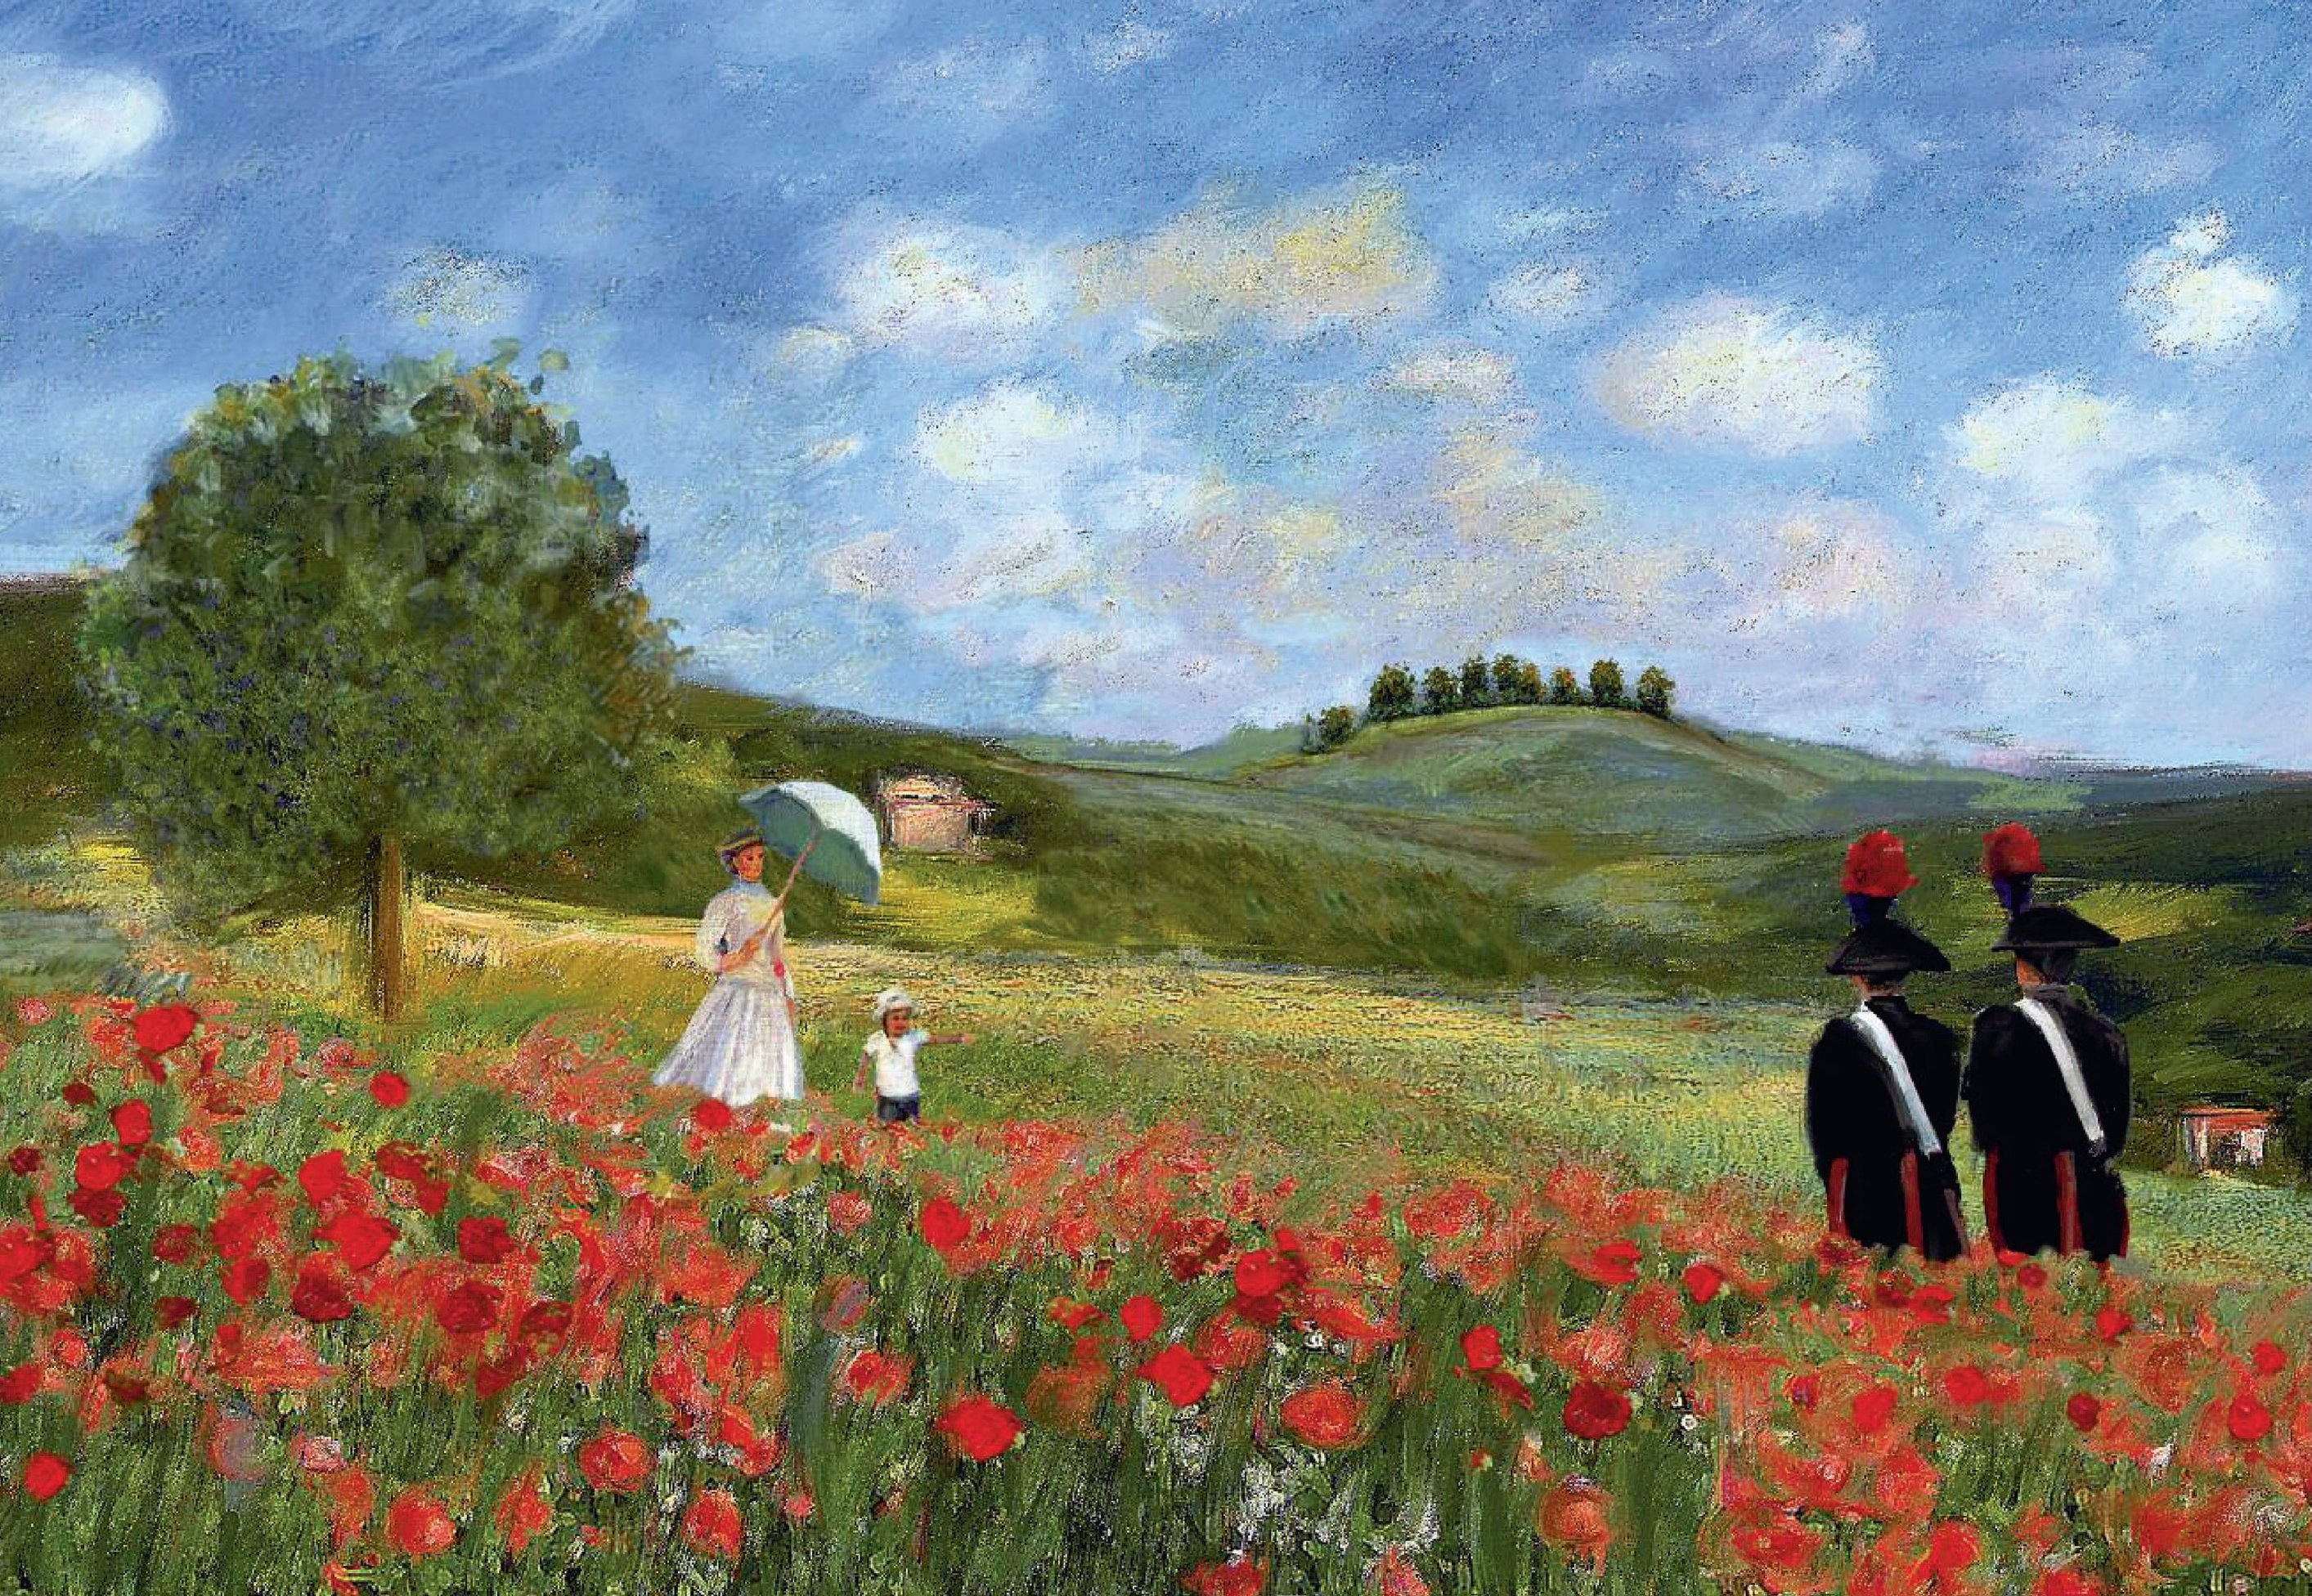 I Carabinieri tra le grandi opere di Monet, De Chirico, Dalì e Carrà nel calendario 2016 dell’Arma